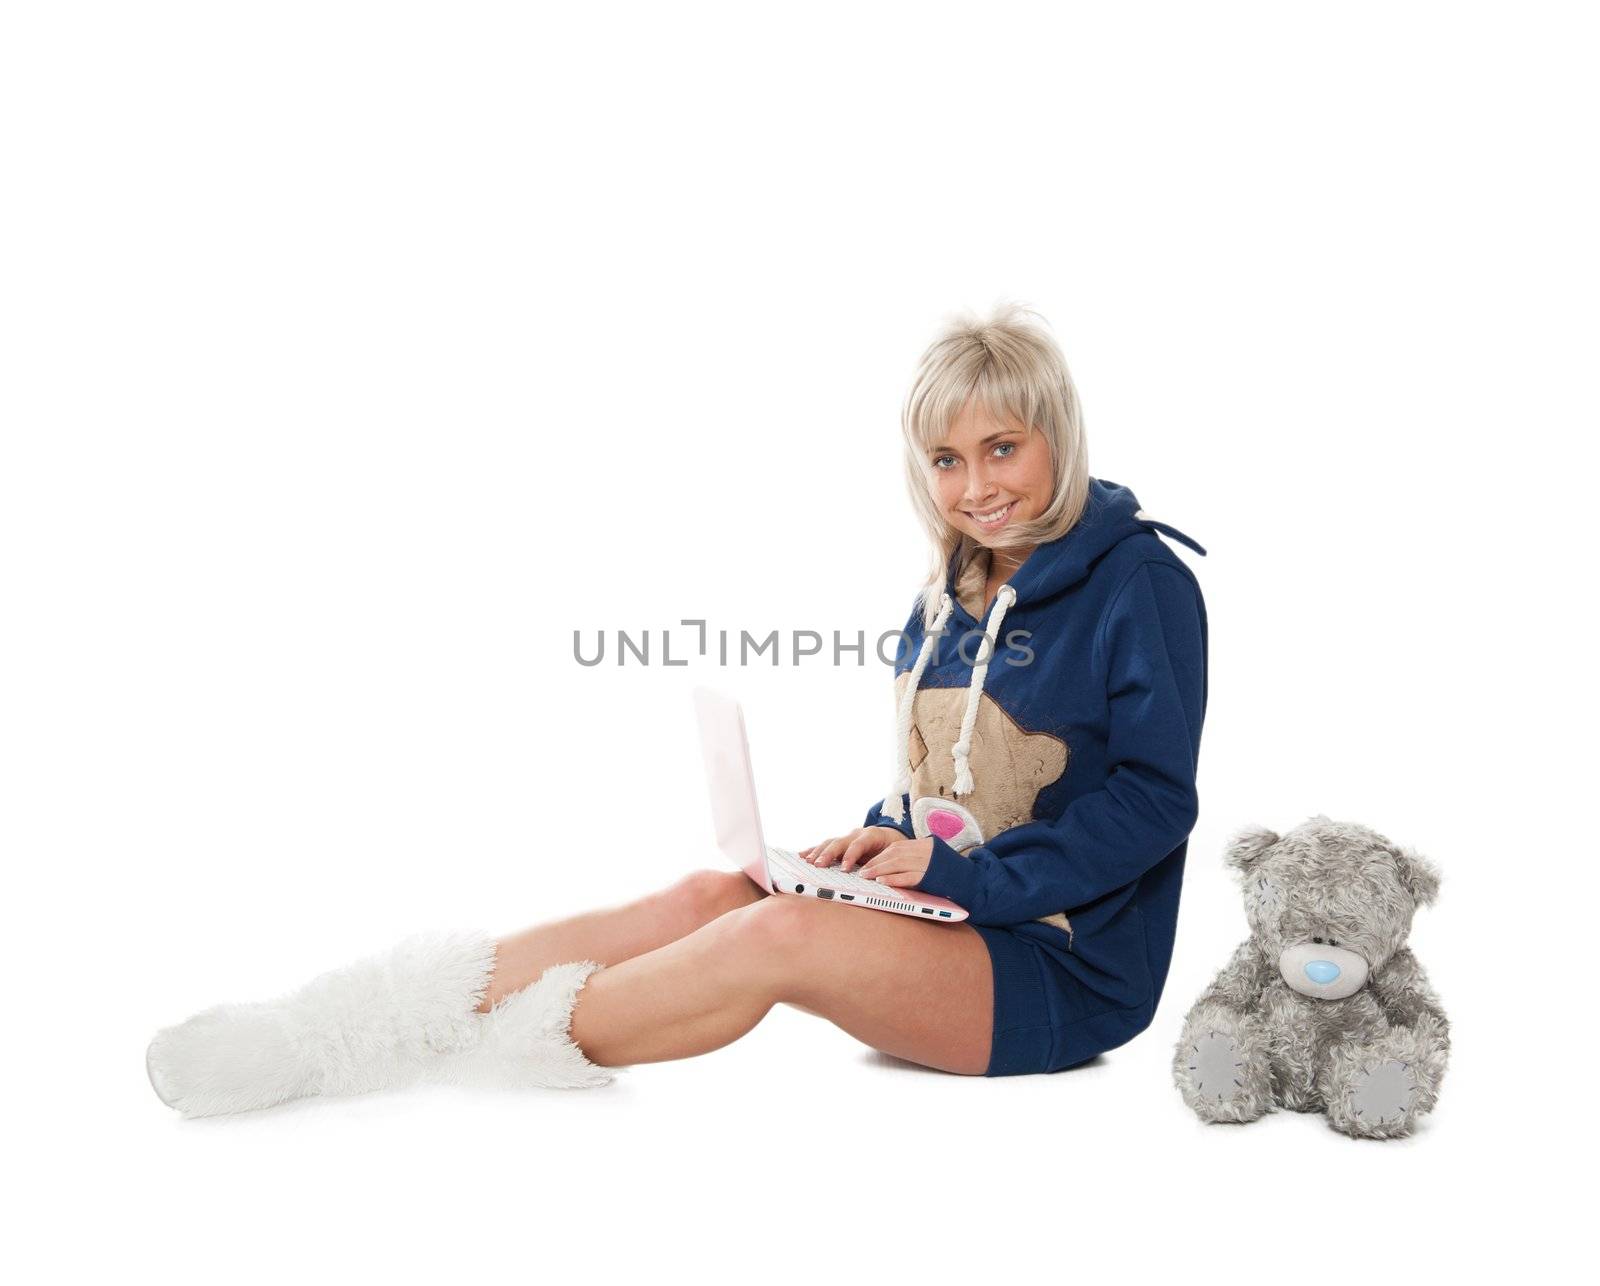 lgirl with a teddy bear on the floor with a laptop